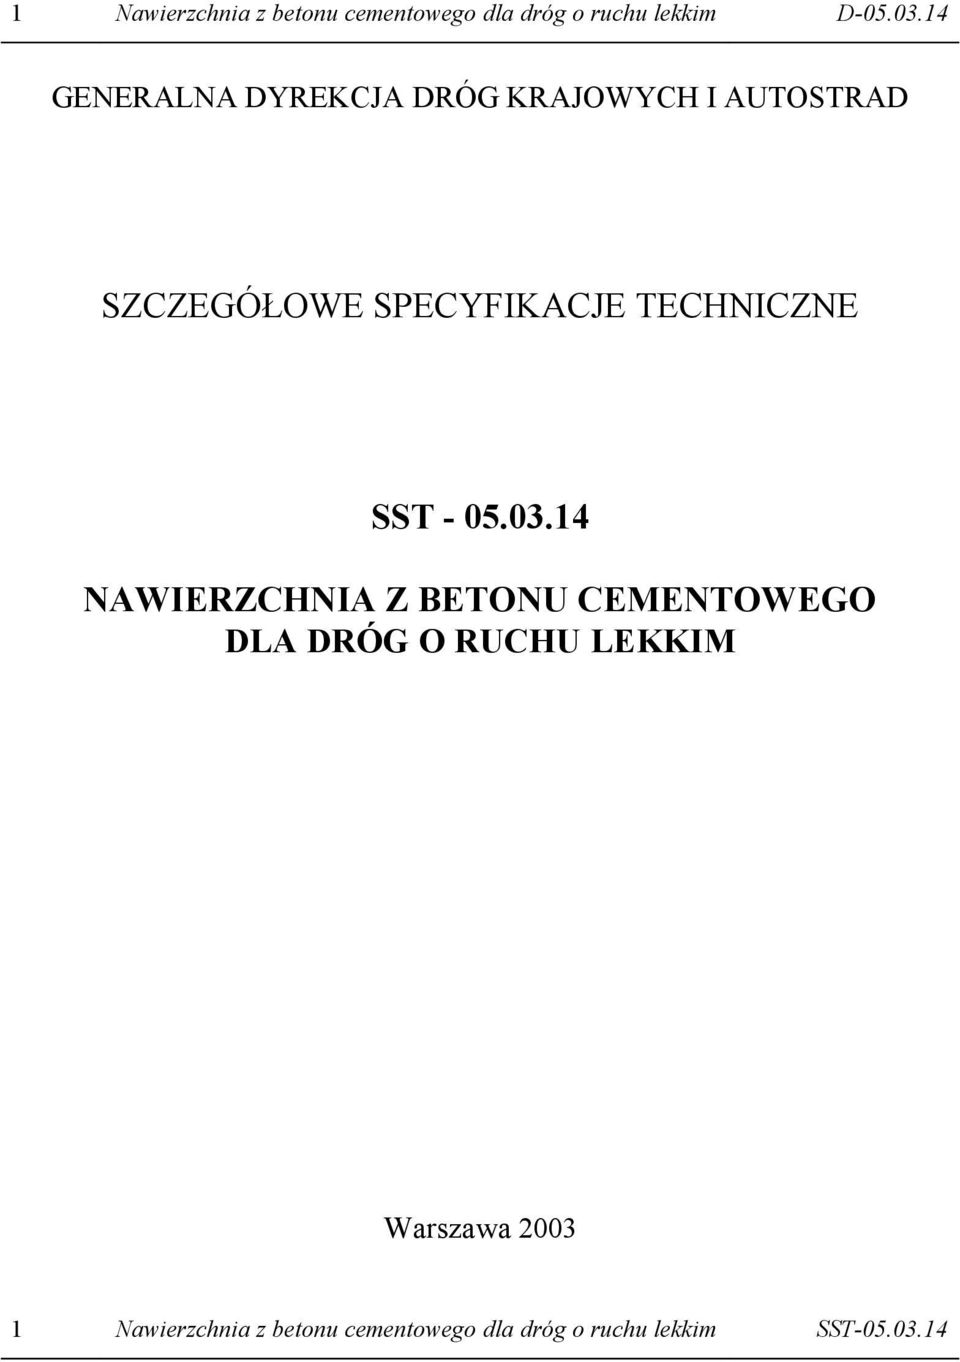 TECHNICZNE SST - 05.03.